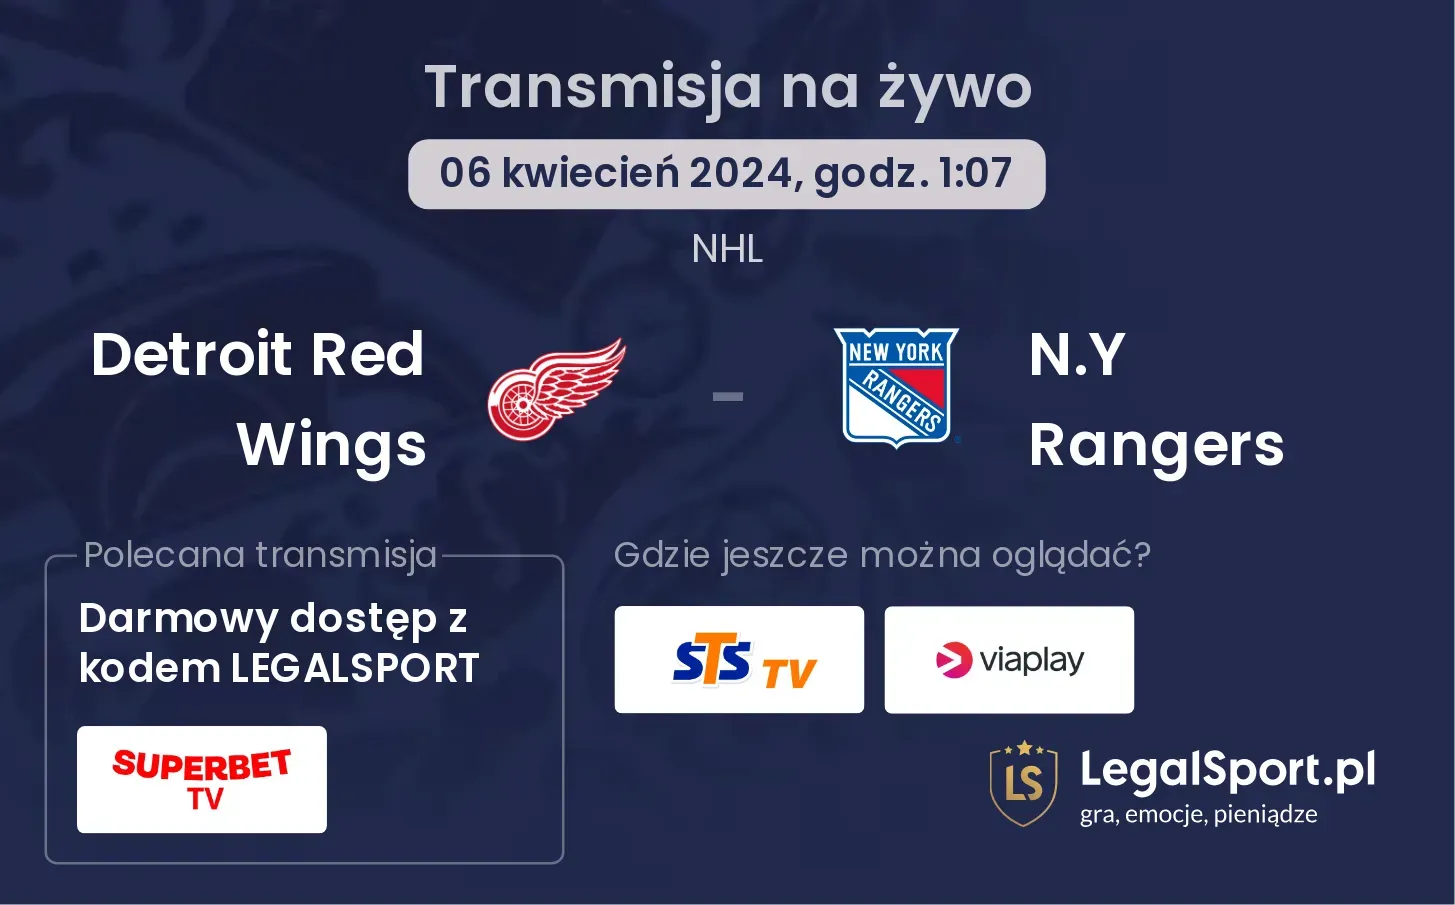 Detroit Red Wings - N.Y Rangers transmisja na żywo